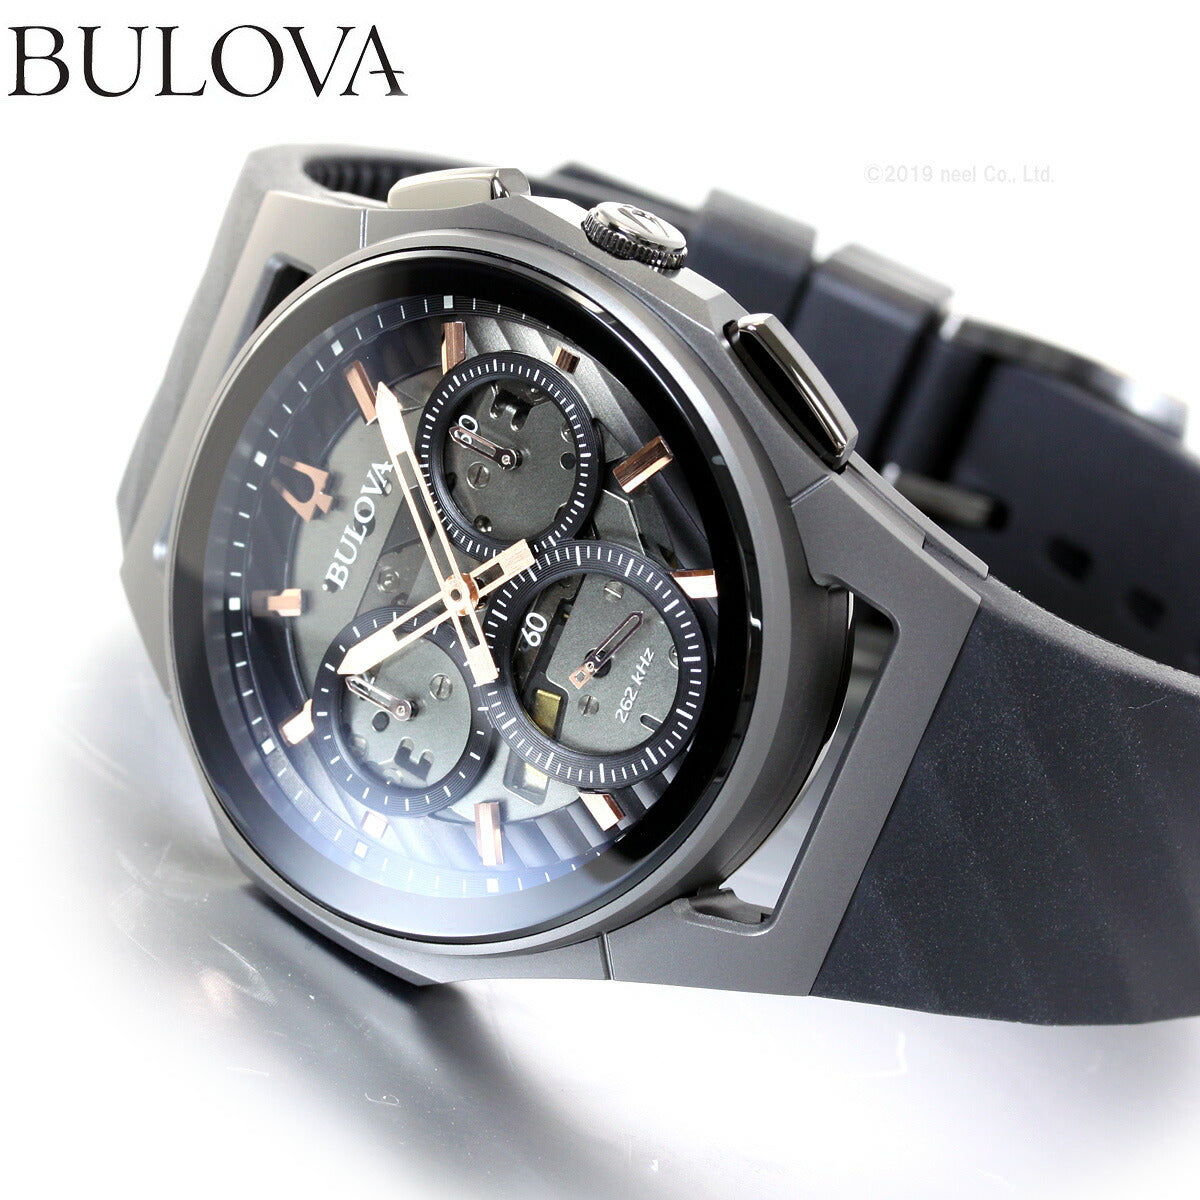 ブローバ BULOVA 腕時計 メンズ カーブ プログレッシブスポーツ CURV Progressive Sports クロノグラフ 98A162【36回無金利ローン】